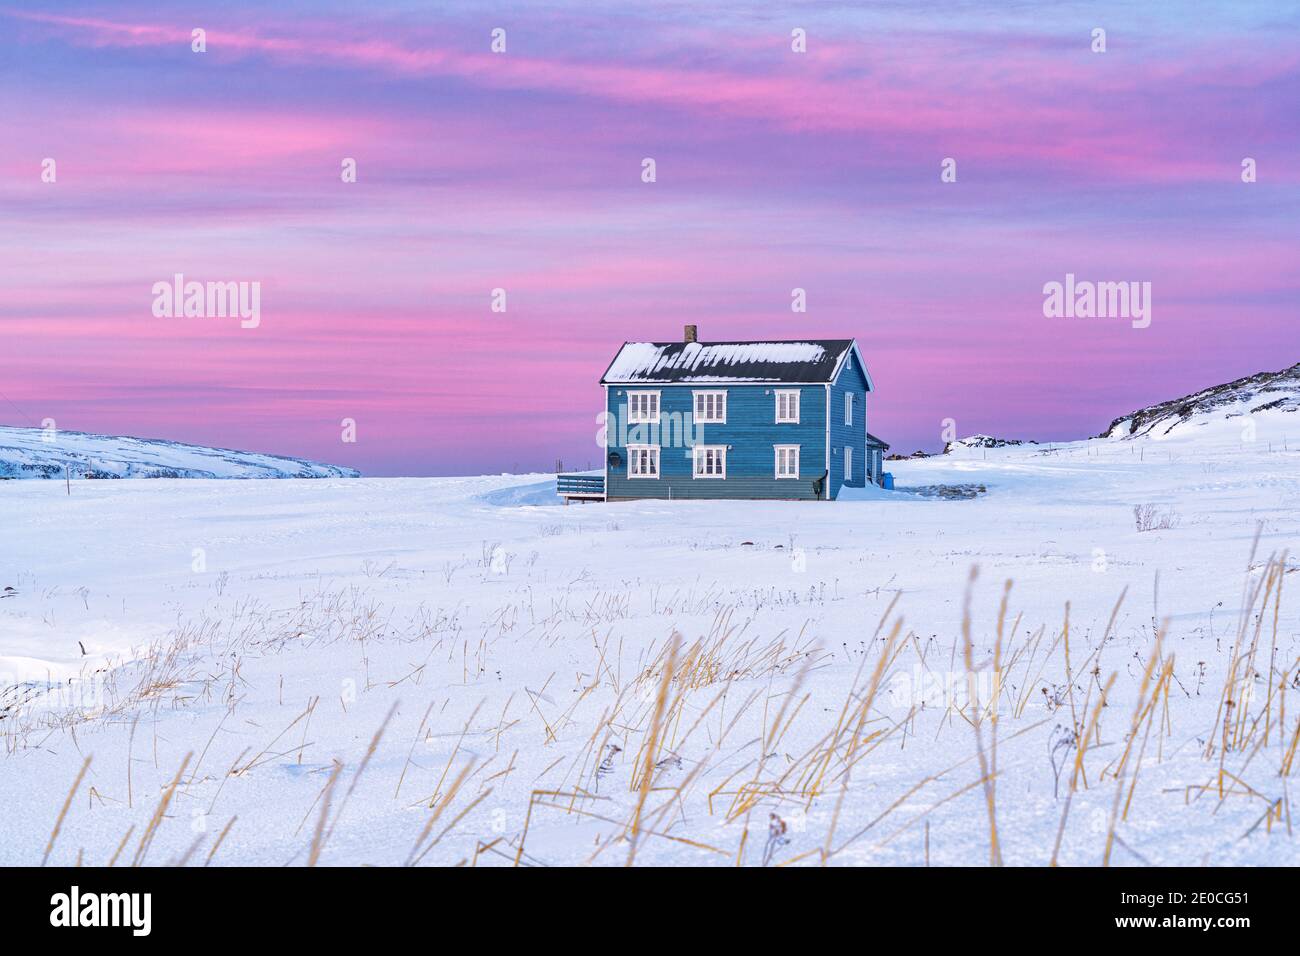 Maison isolée dans la neige sous le soleil rose de l'arctique, Veines, Kongsfjord, Varanger Peninsula, Troms og Finnmark, Norvège, Scandinavie, Europe Banque D'Images